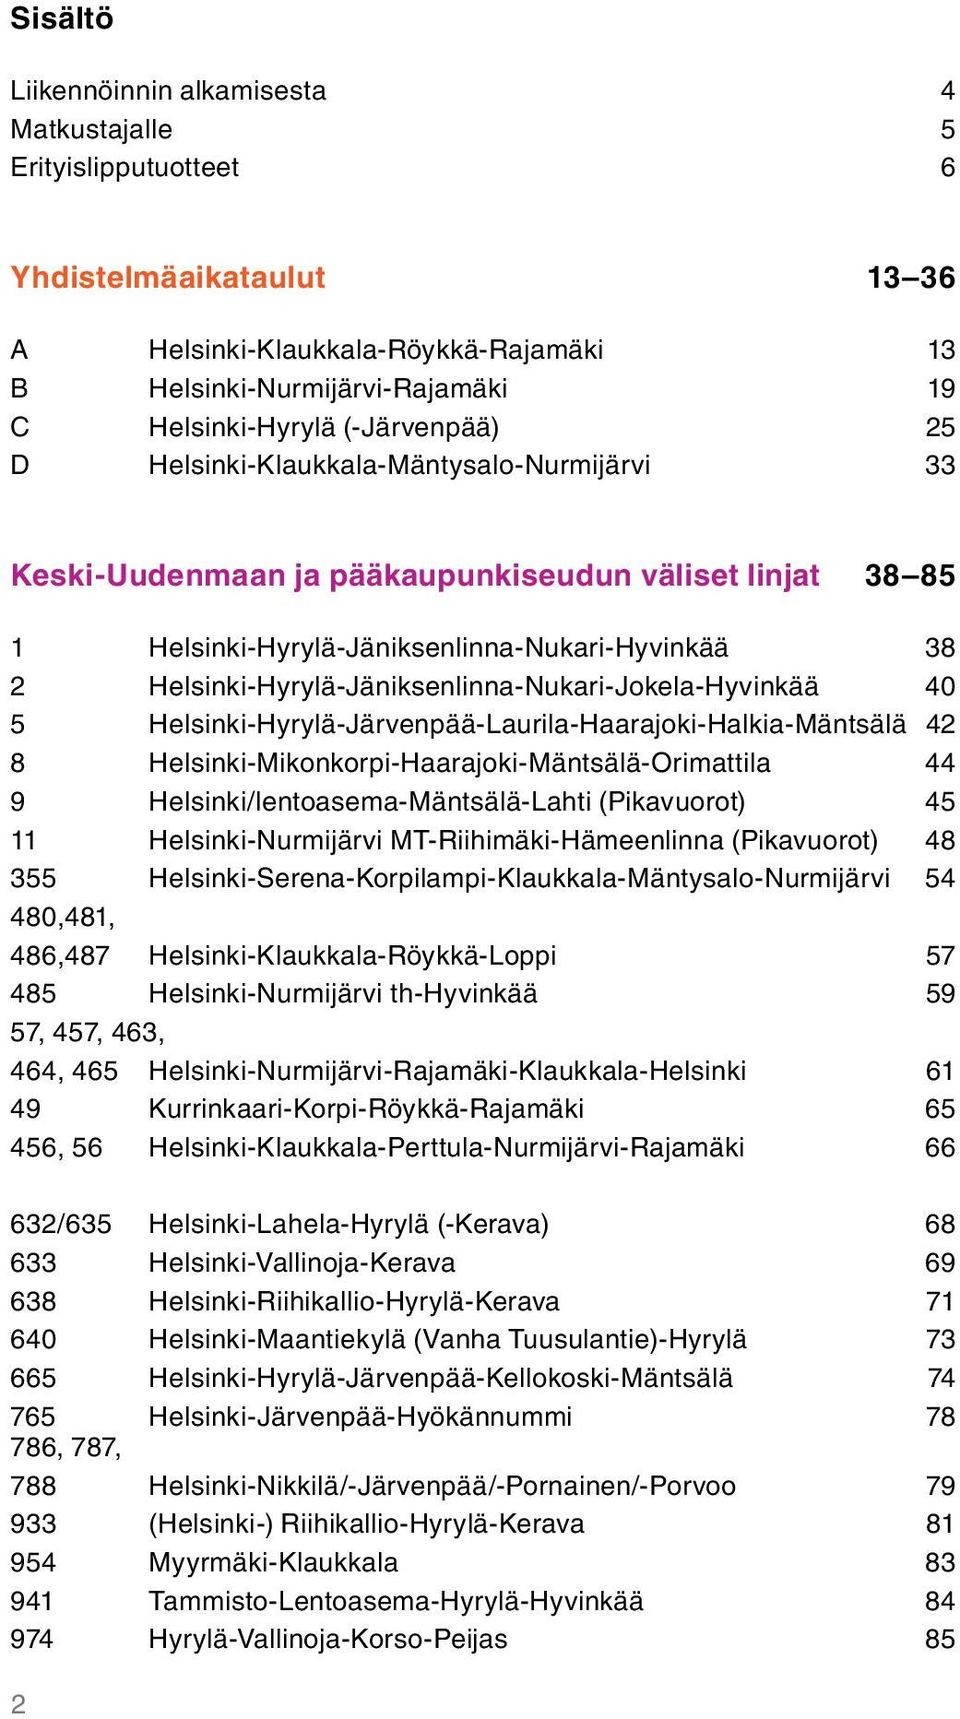 Helsinki-Hyrylä-Jäniksenlinna-Nukari-Jokela-Hyvinkää 40 5 Helsinki-Hyrylä-Järvenpää-Laurila-Haarajoki-Halkia-Mäntsälä 42 8 Helsinki-Mikonkorpi-Haarajoki-Mäntsälä-Orimattila 44 9